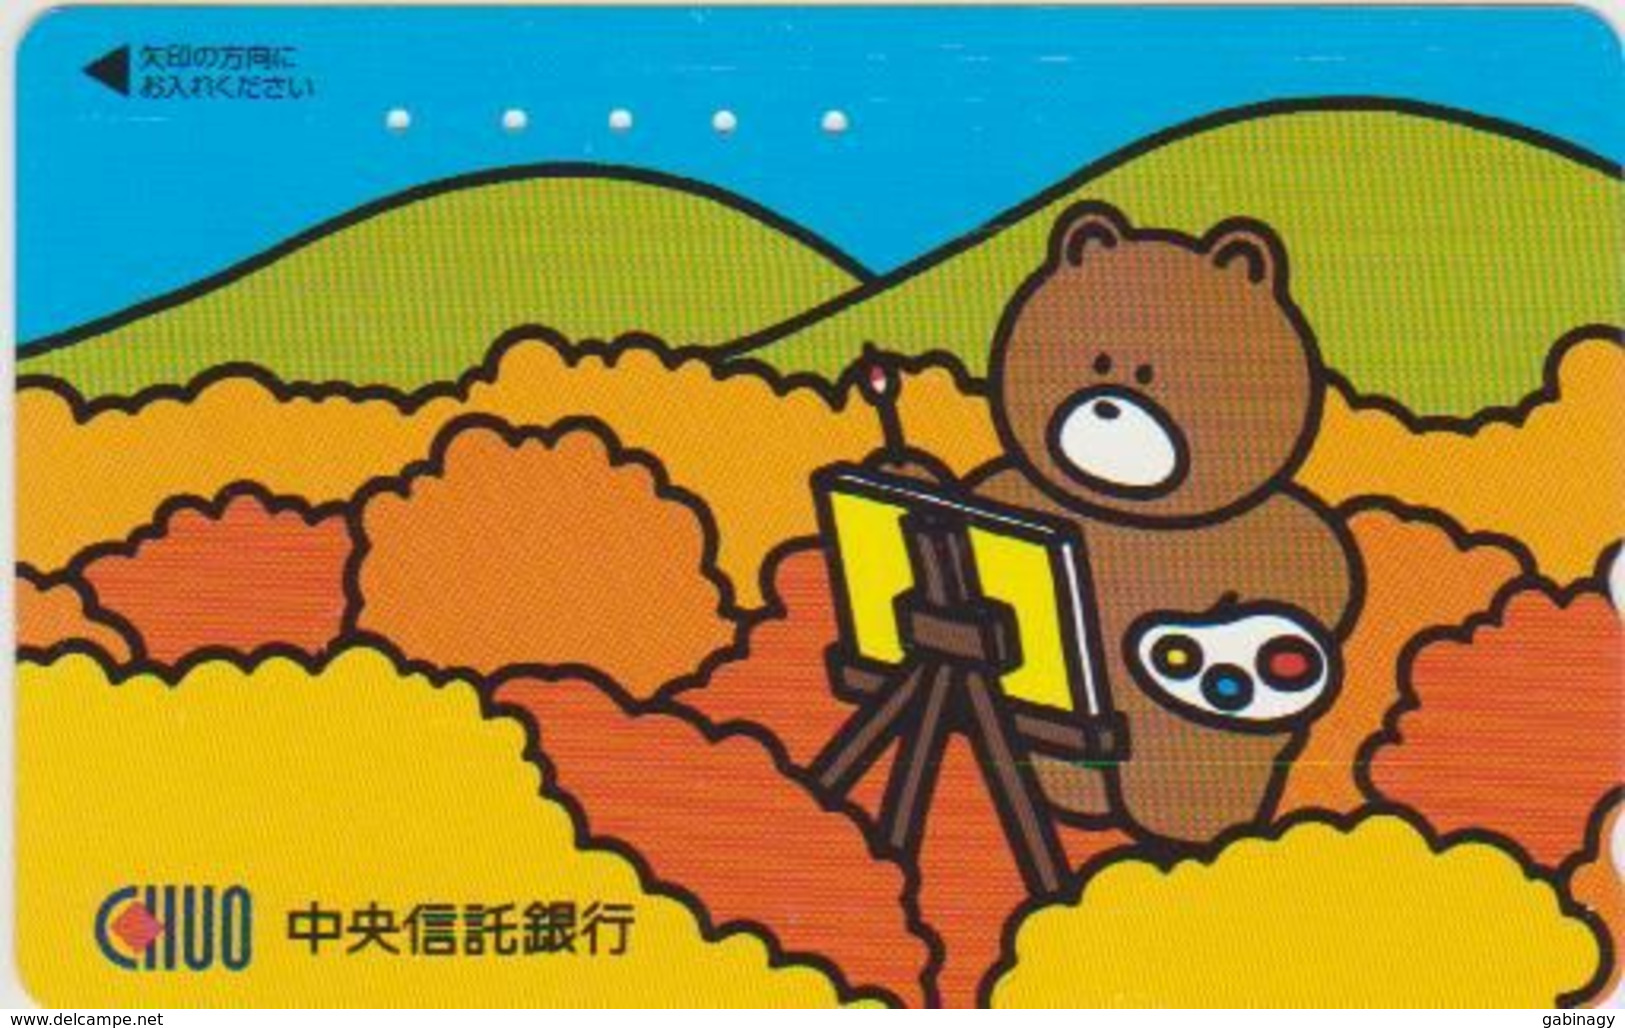 TEDDY BEAR - JAPAN 012 - CARTOON - 110-016 - Games